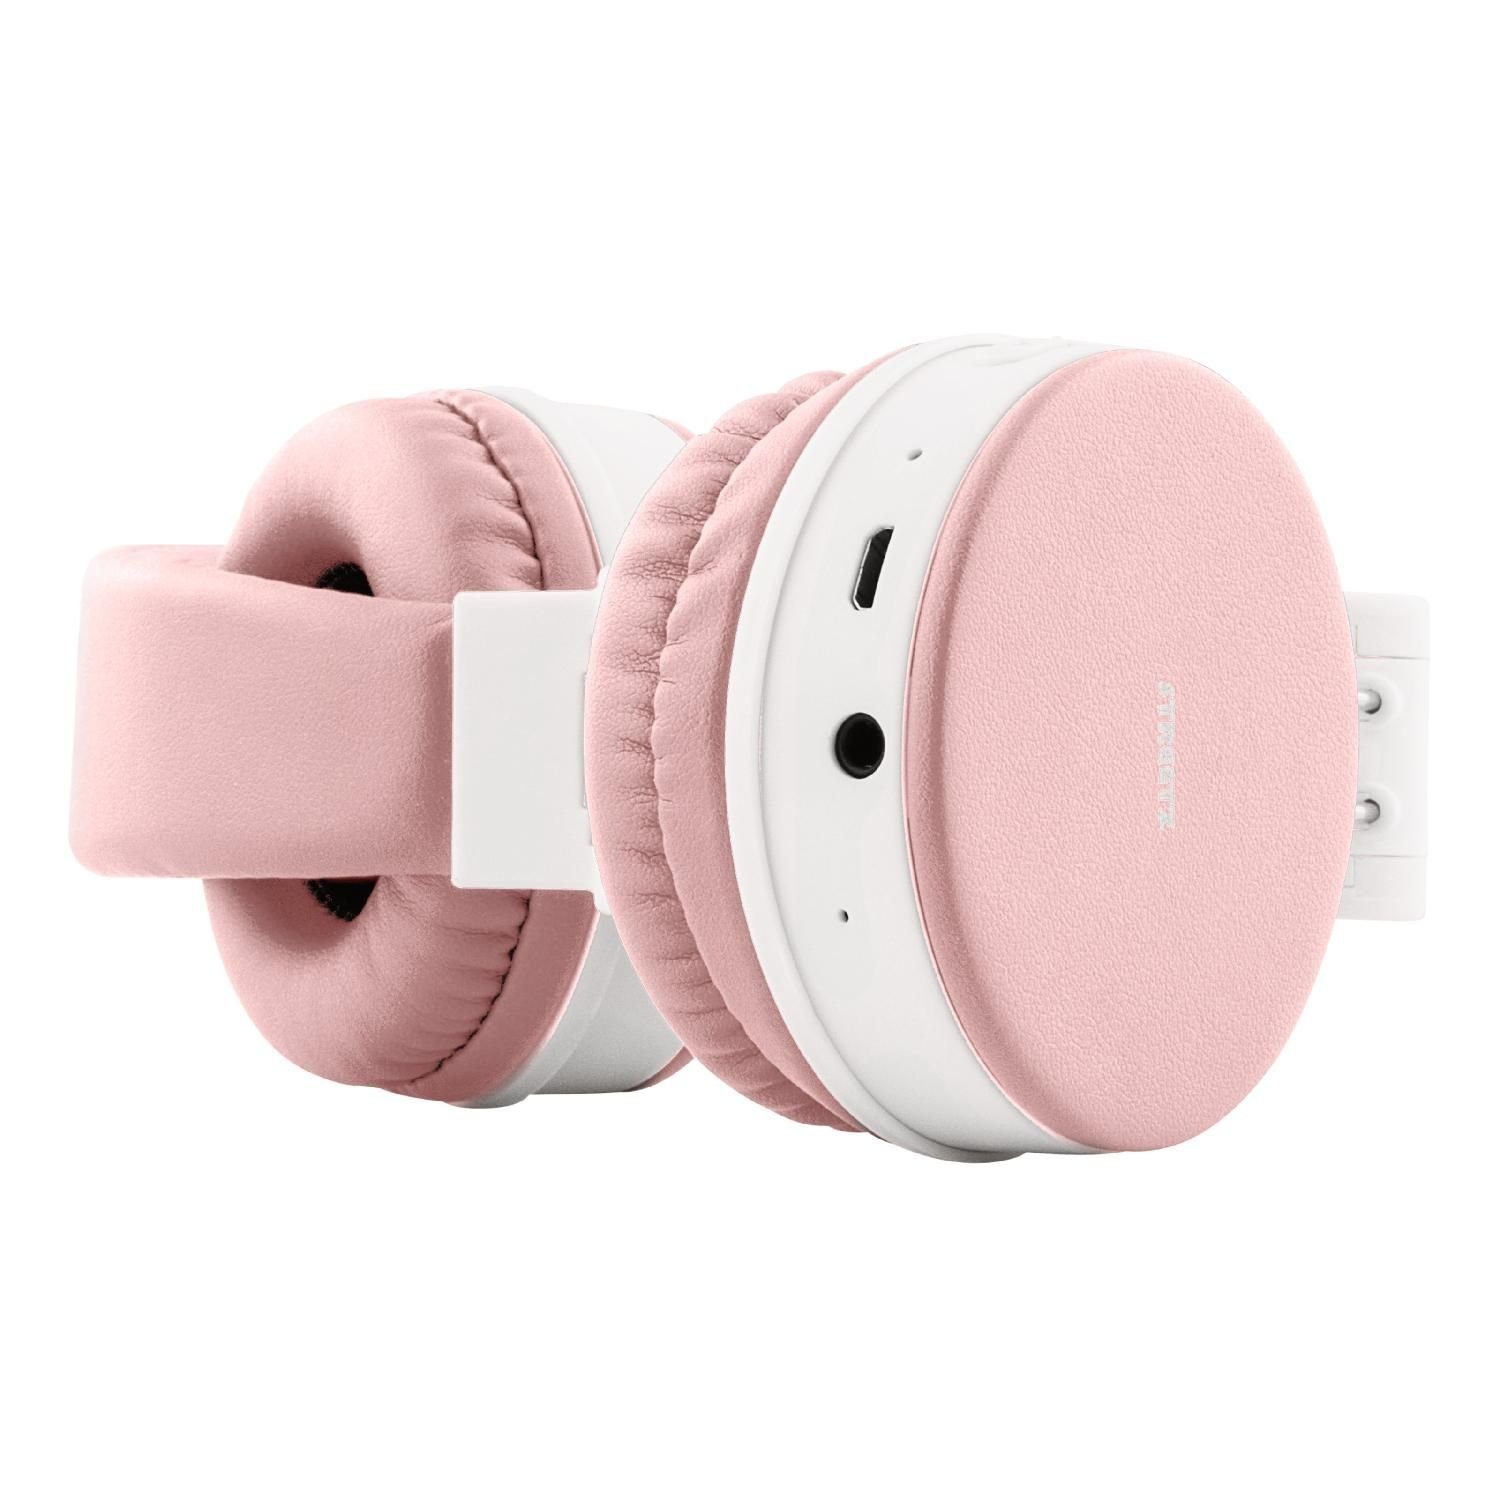 STREETZ Bluetooth Kopfhörer 22Std Spielzeit Kabel Jahre faltbar AUX inkl. Herstellergarantie) pink 5 Kopfhörer bis (Bluetooth, zu